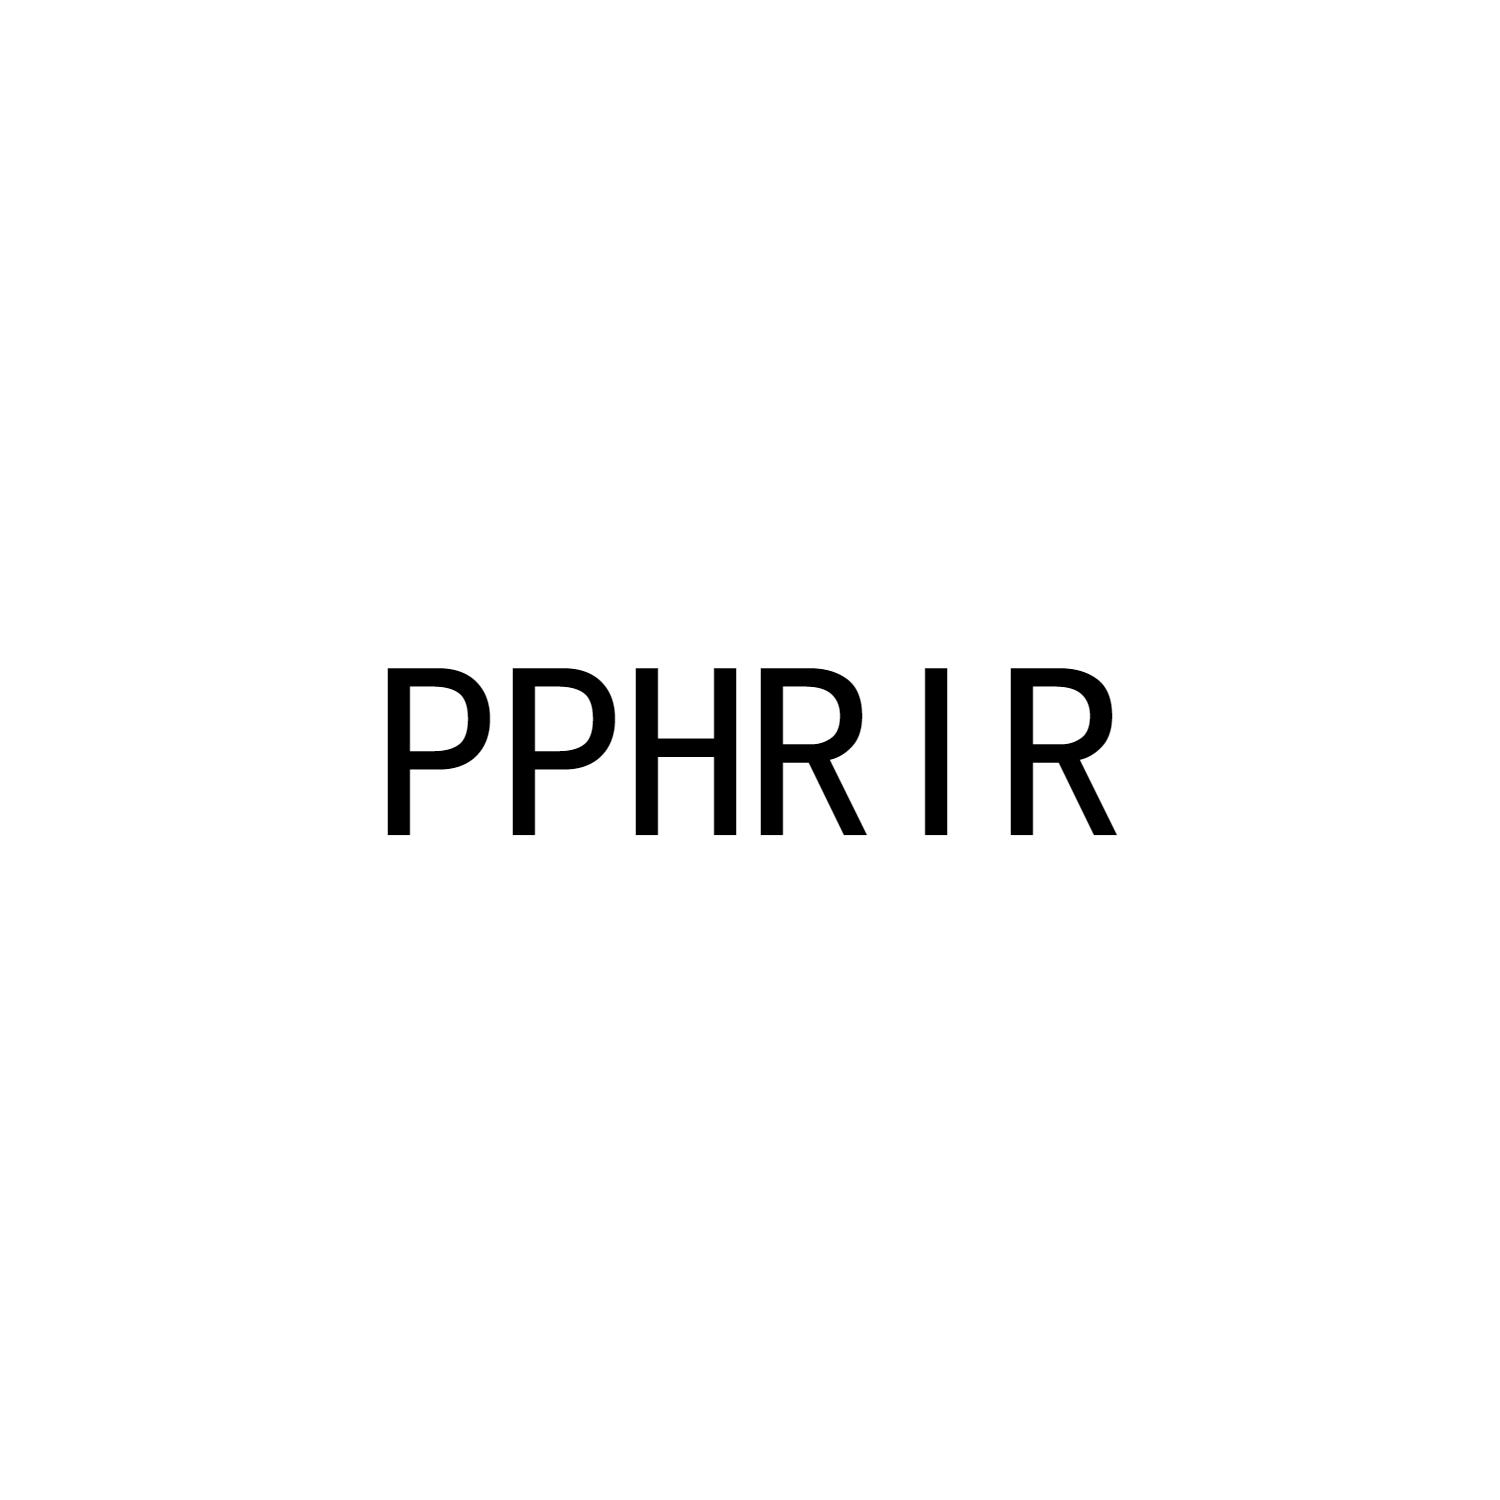 PPHRIR